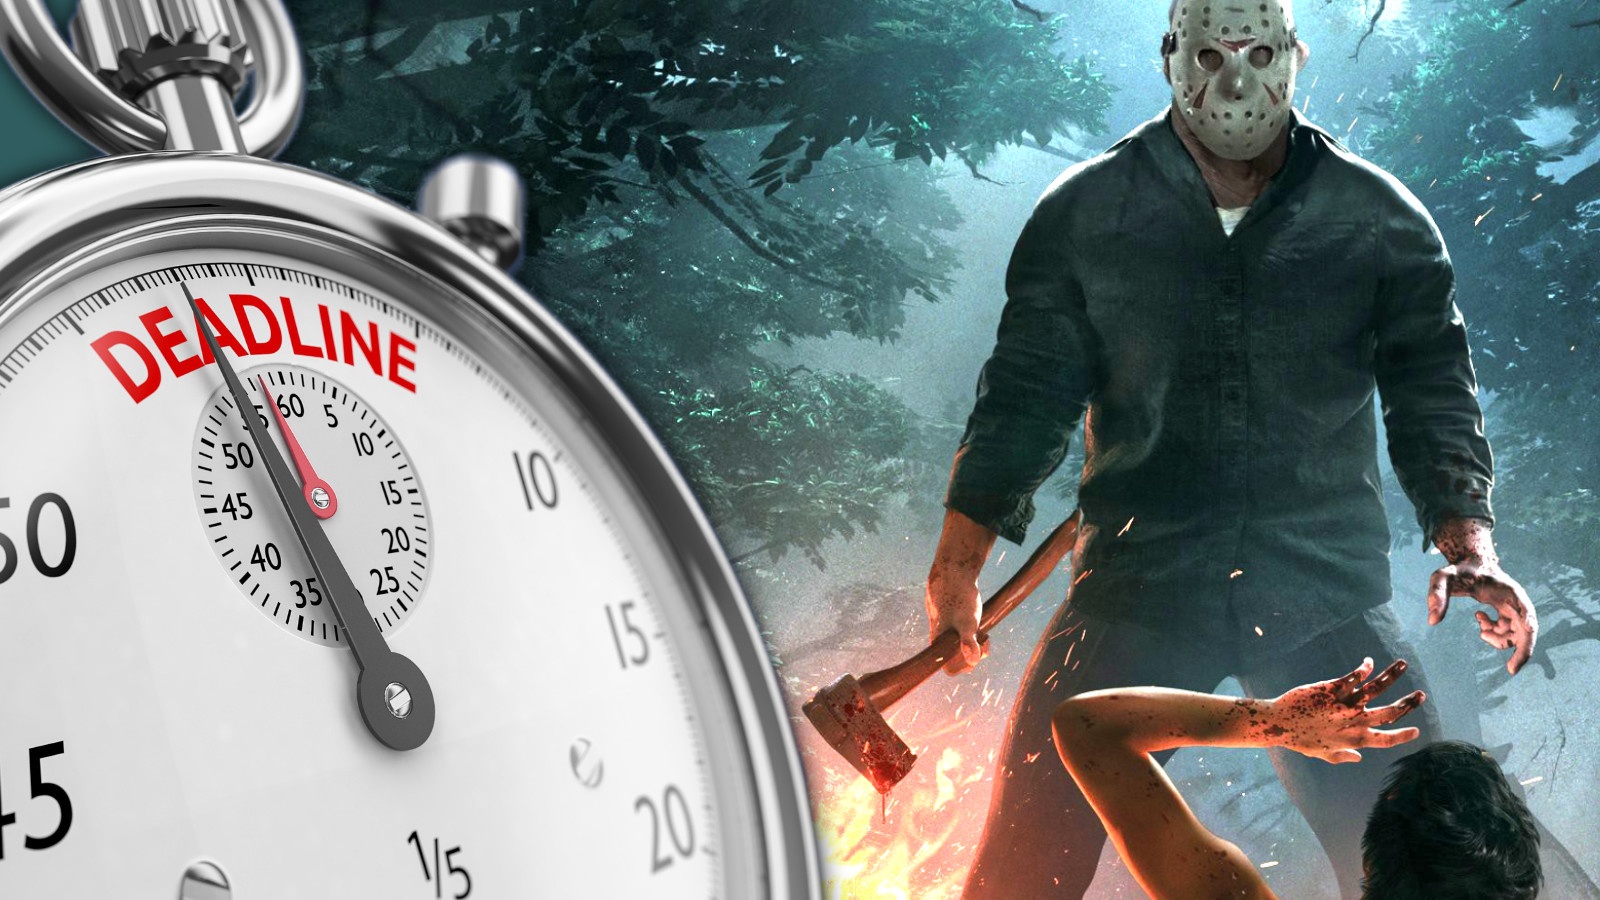 #Horrorspiel Friday the 13th wird abgeschaltet, aber vorher bricht der Damm nochmal so richtig